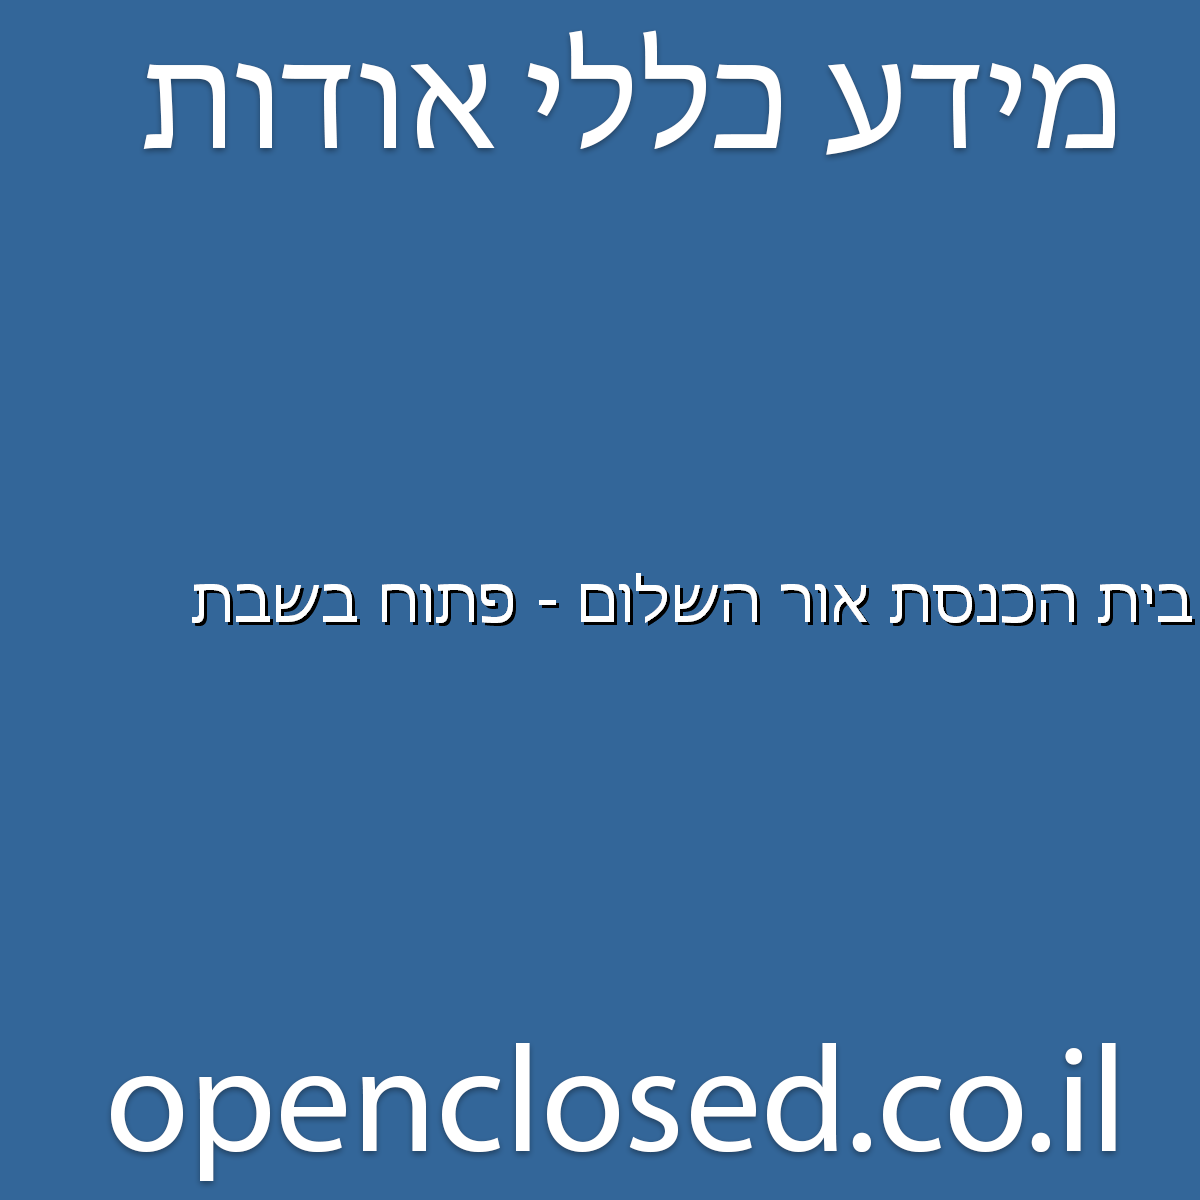 בית הכנסת אור השלום – פתוח בשבת